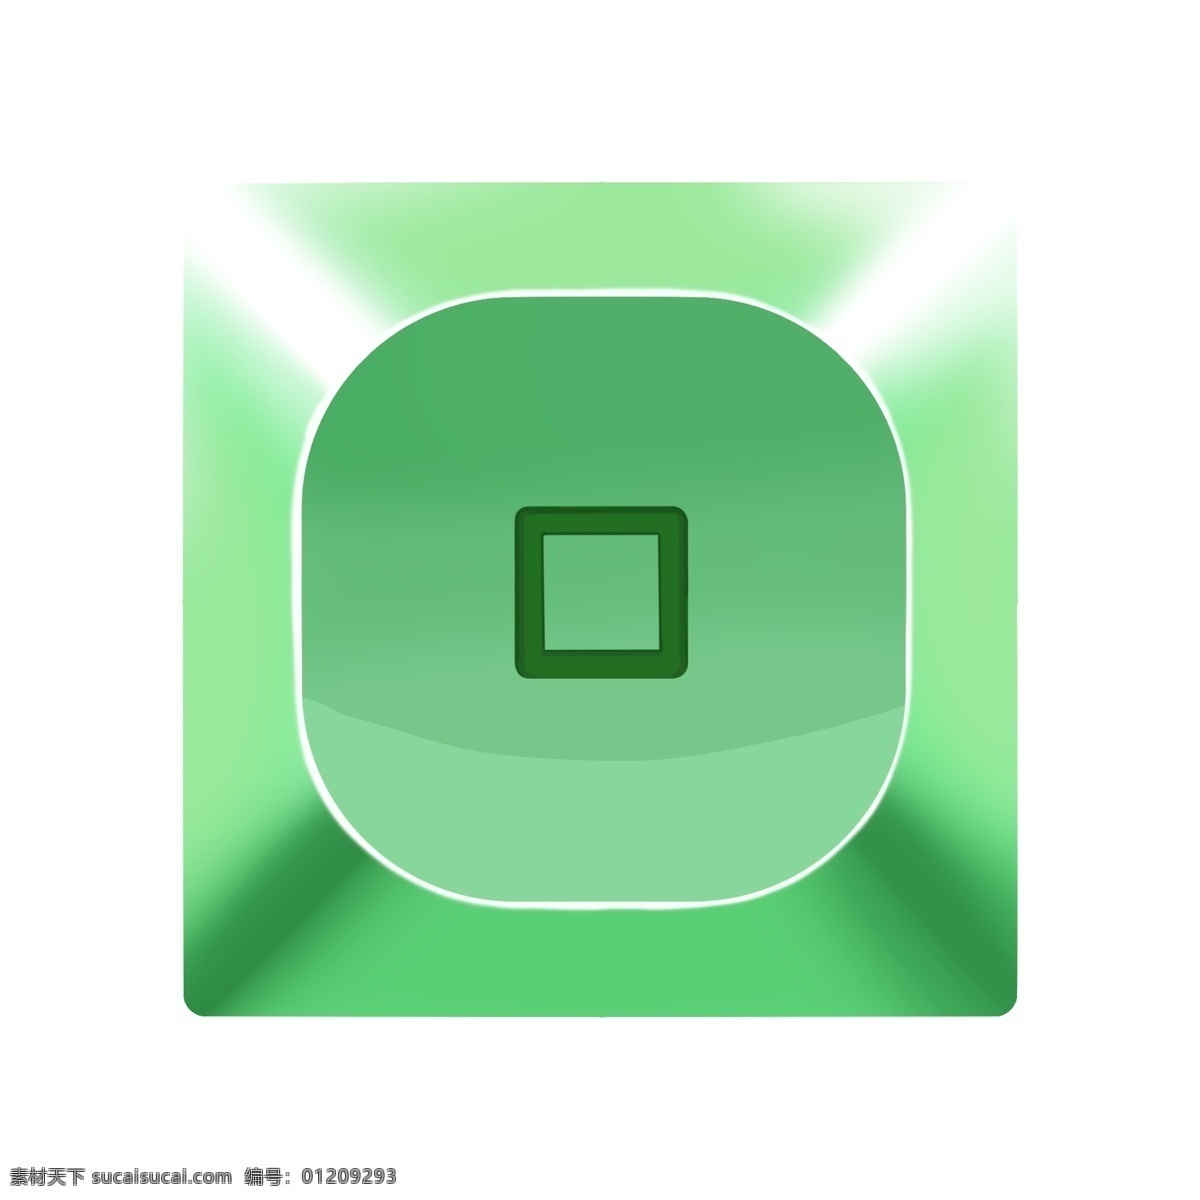 绿色 手绘 金属 按钮 图标 水晶按钮 金属按钮 发光按钮 手机图标 网页图标 网页按钮 手绘按钮 图标设计 按钮设计 浮雕按钮 立体按钮设计